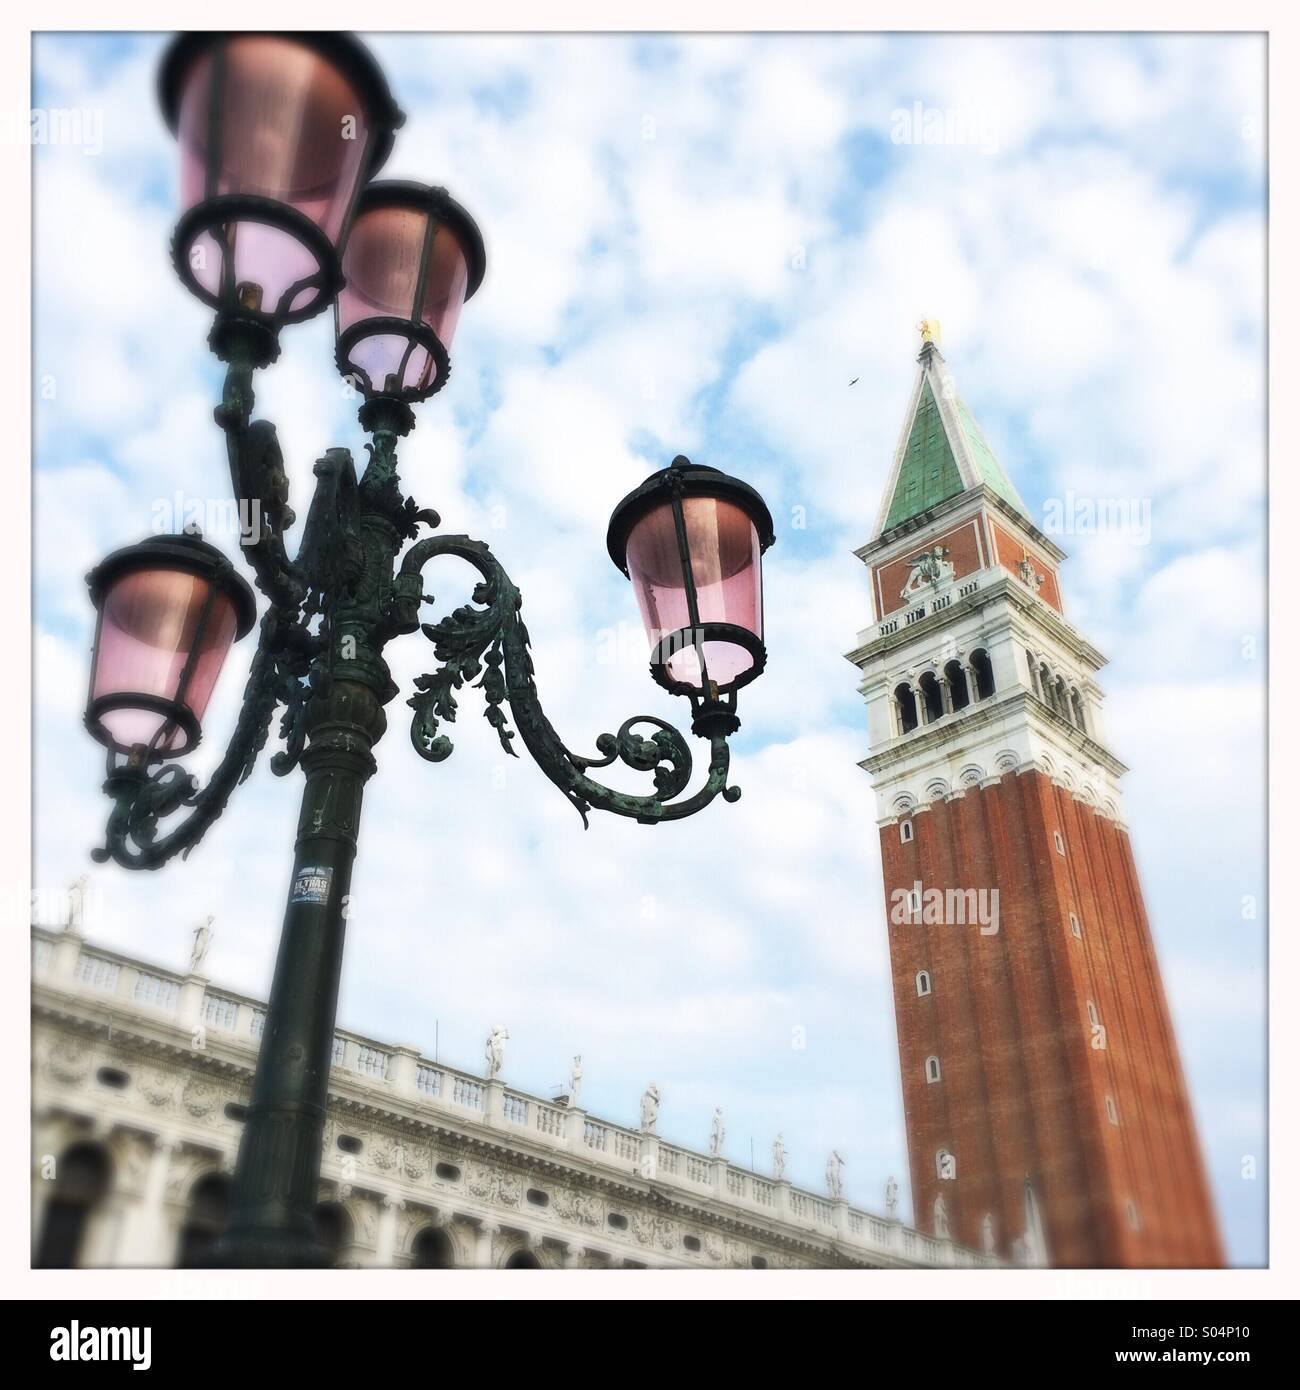 Lampe de rue et son campanile, la Place San Marco, Venice, Veneto, Italie Banque D'Images